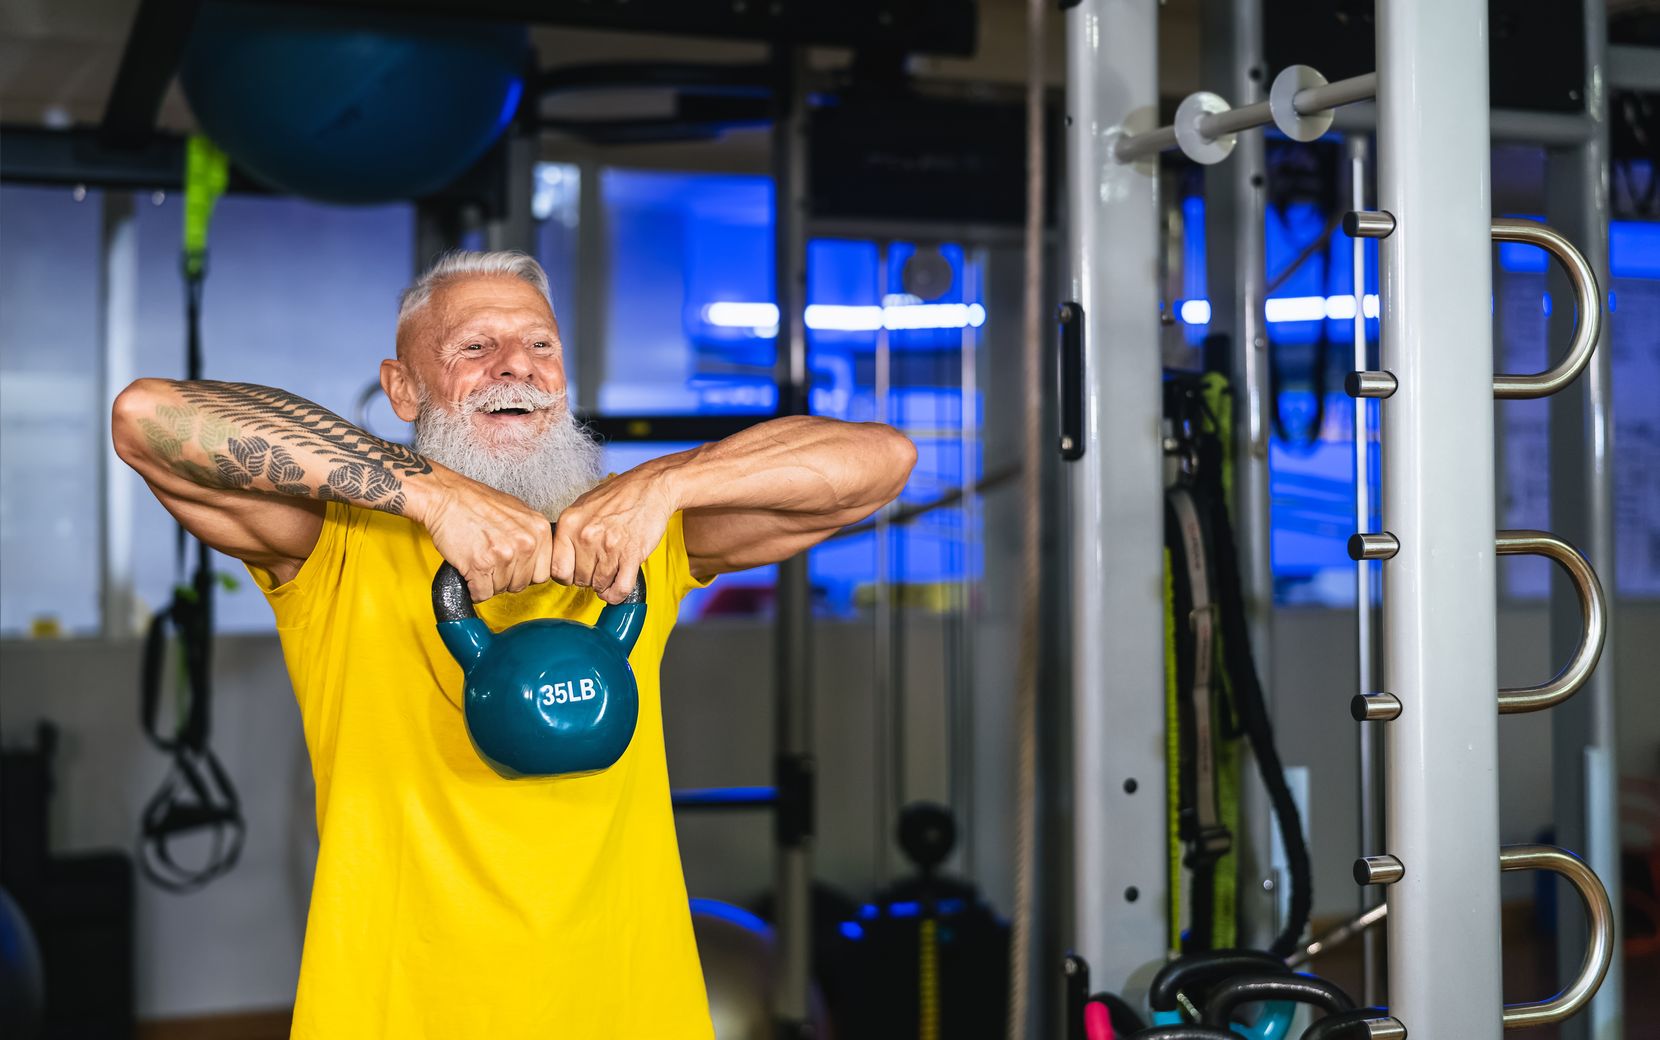 Man sieht ein älterer Herr, der in einem Gym Krafttraining macht und dabei sehr fröhlich aussieht. 